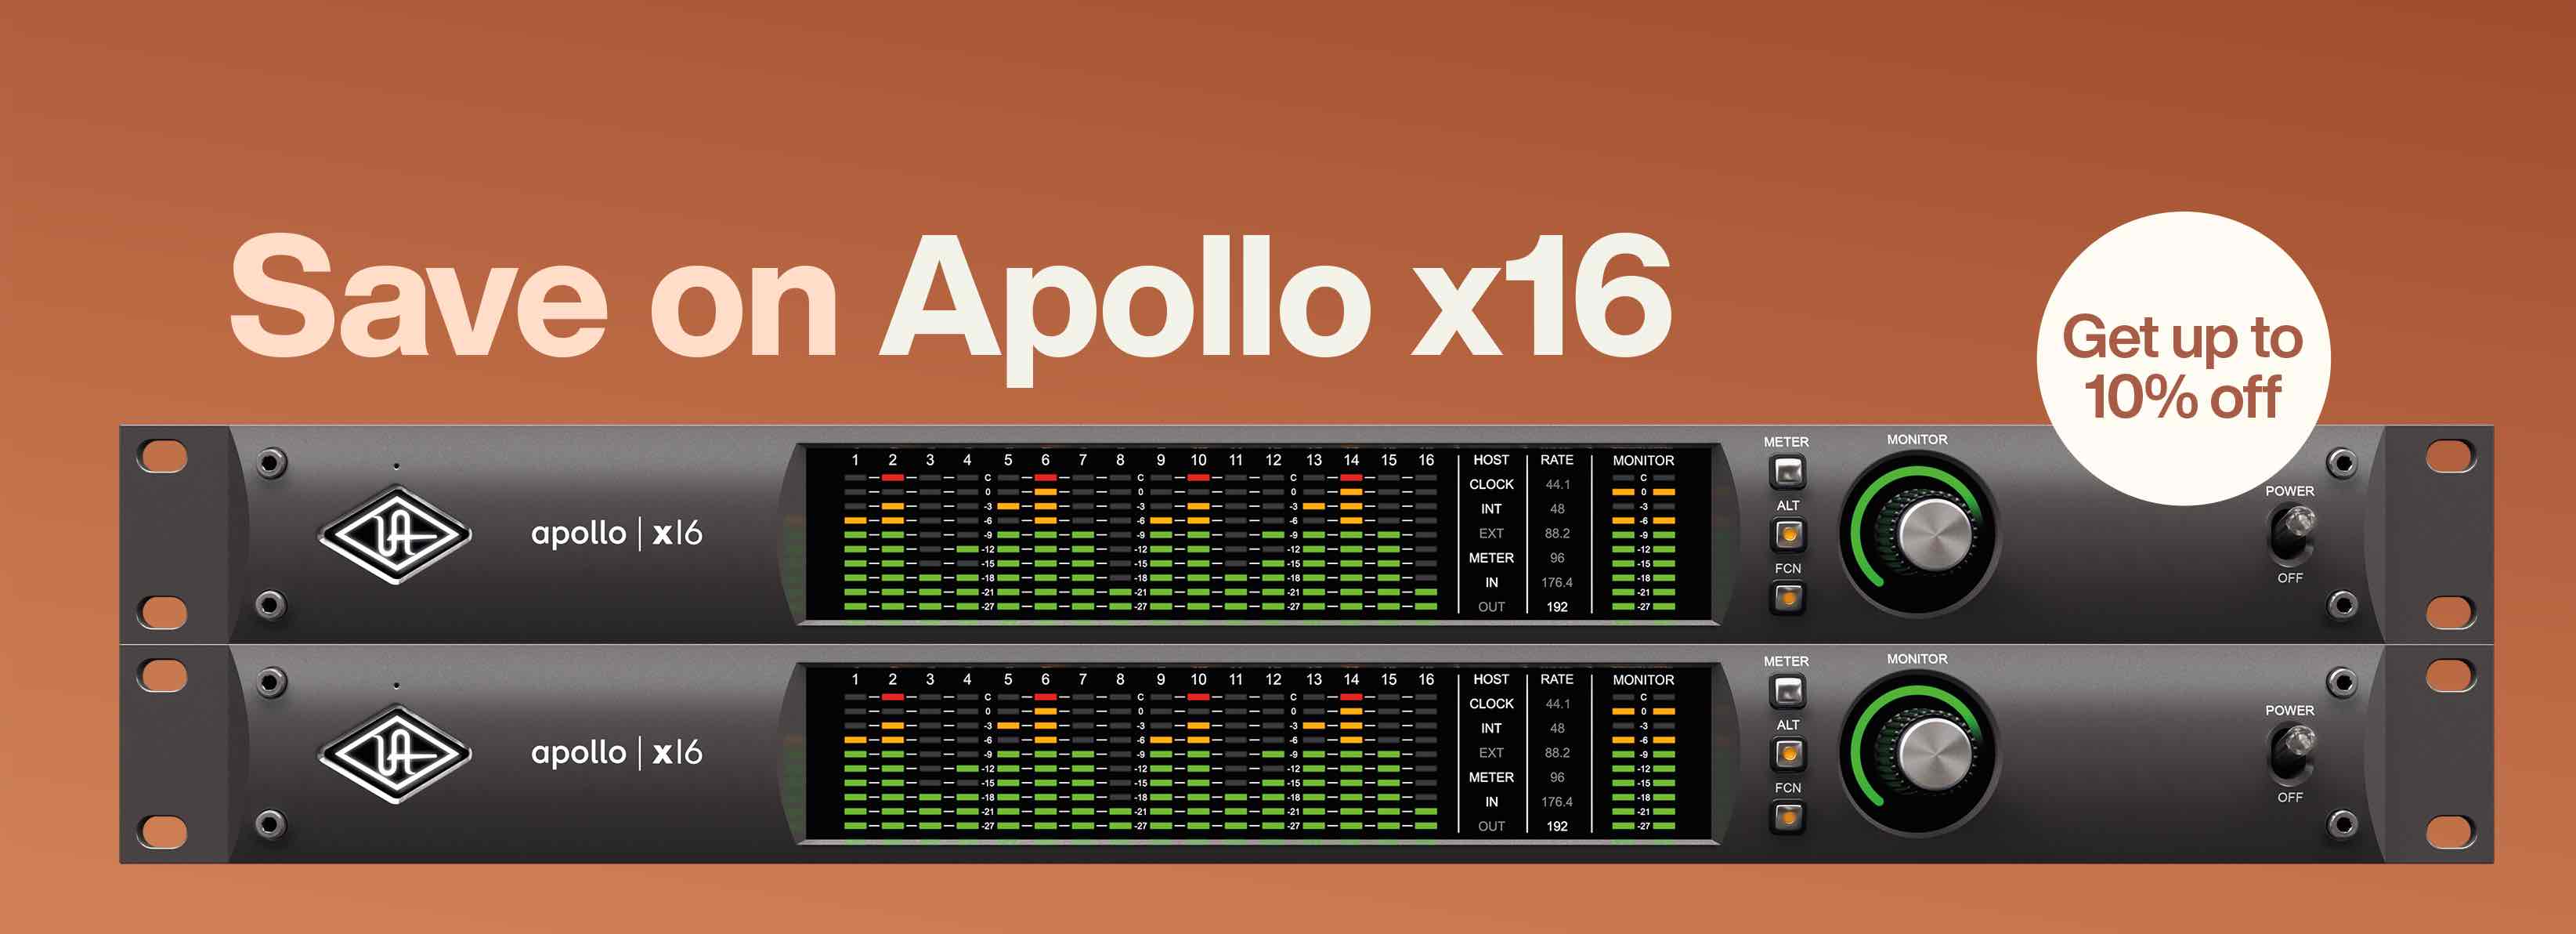 Compra tu nueva Apollo x16 HE con un ahorro de hasta 500€